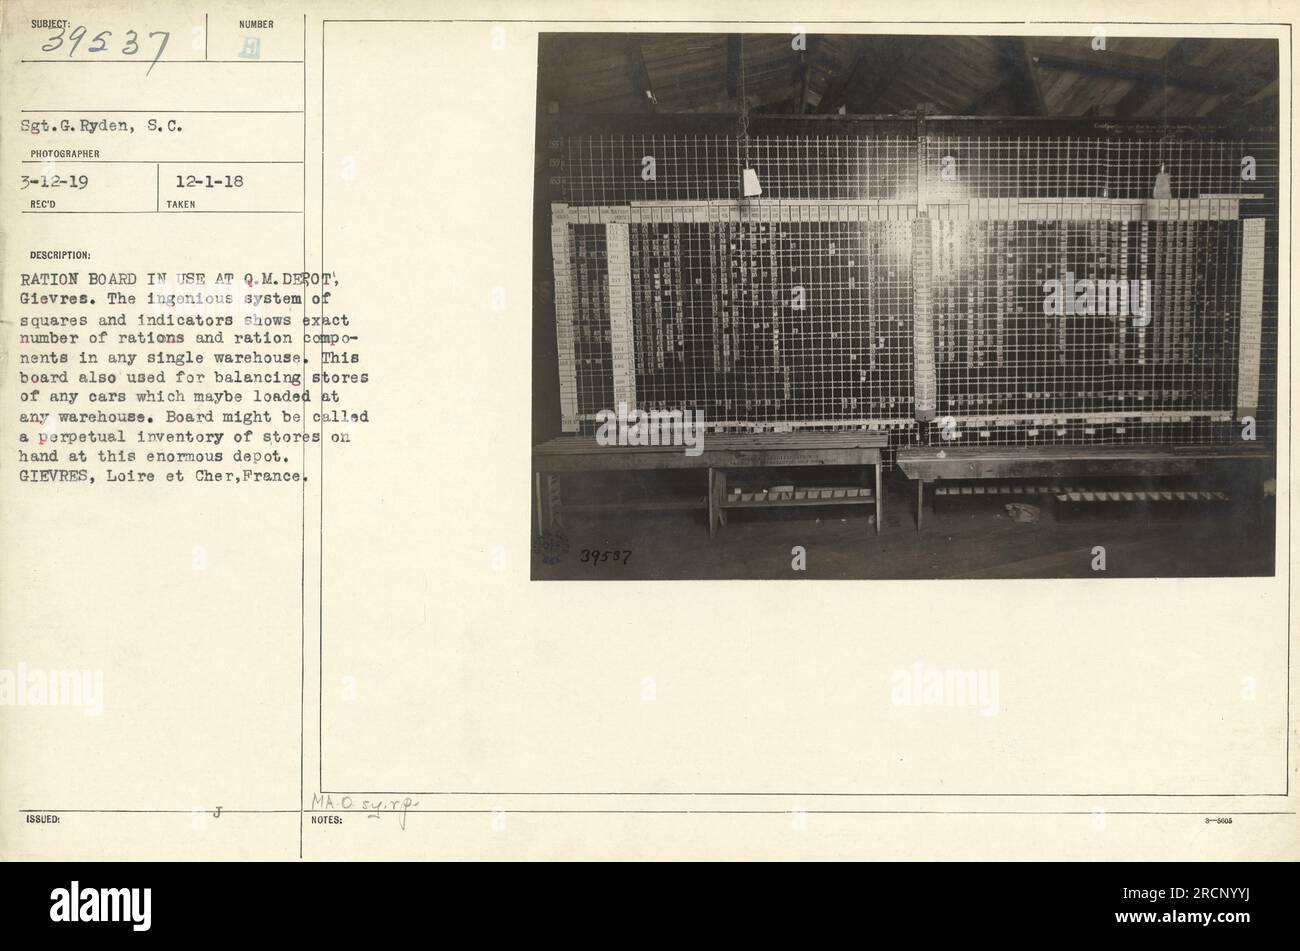 'Sgt.G. Ryden de S.C. a pris une photographie le 12 mars 1919, montrant la planche de rationnement utilisée au Q.M. Dépôt à Gievres. Le tableau, composé de carrés et d'indicateurs, affiche avec précision le nombre de rations et de composants de rations dans chaque entrepôt. Il sert de système d'inventaire perpétuel pour les magasins du dépôt. » Banque D'Images